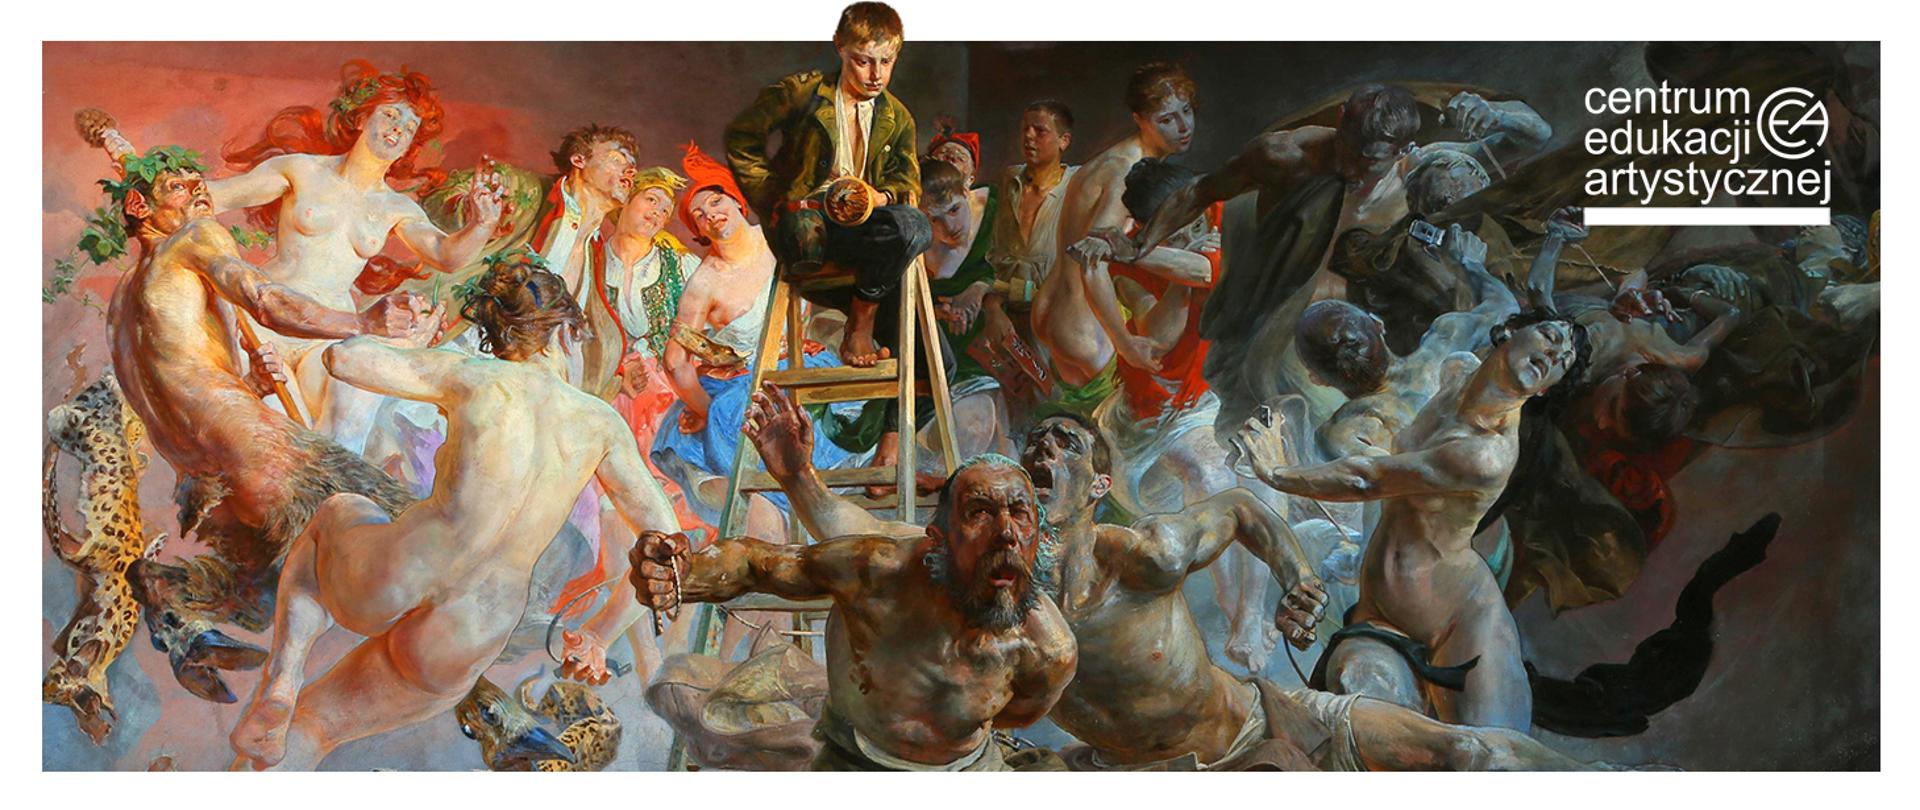 fragment obrazu Jacka Malczewskiego "Błędne Koło" na nim dynamiczna kompozycja postaci otaczających drabinę na której siedzi chłopiec. W prawym górnym rogu logotyp Centrum Edukacji Artystycznej